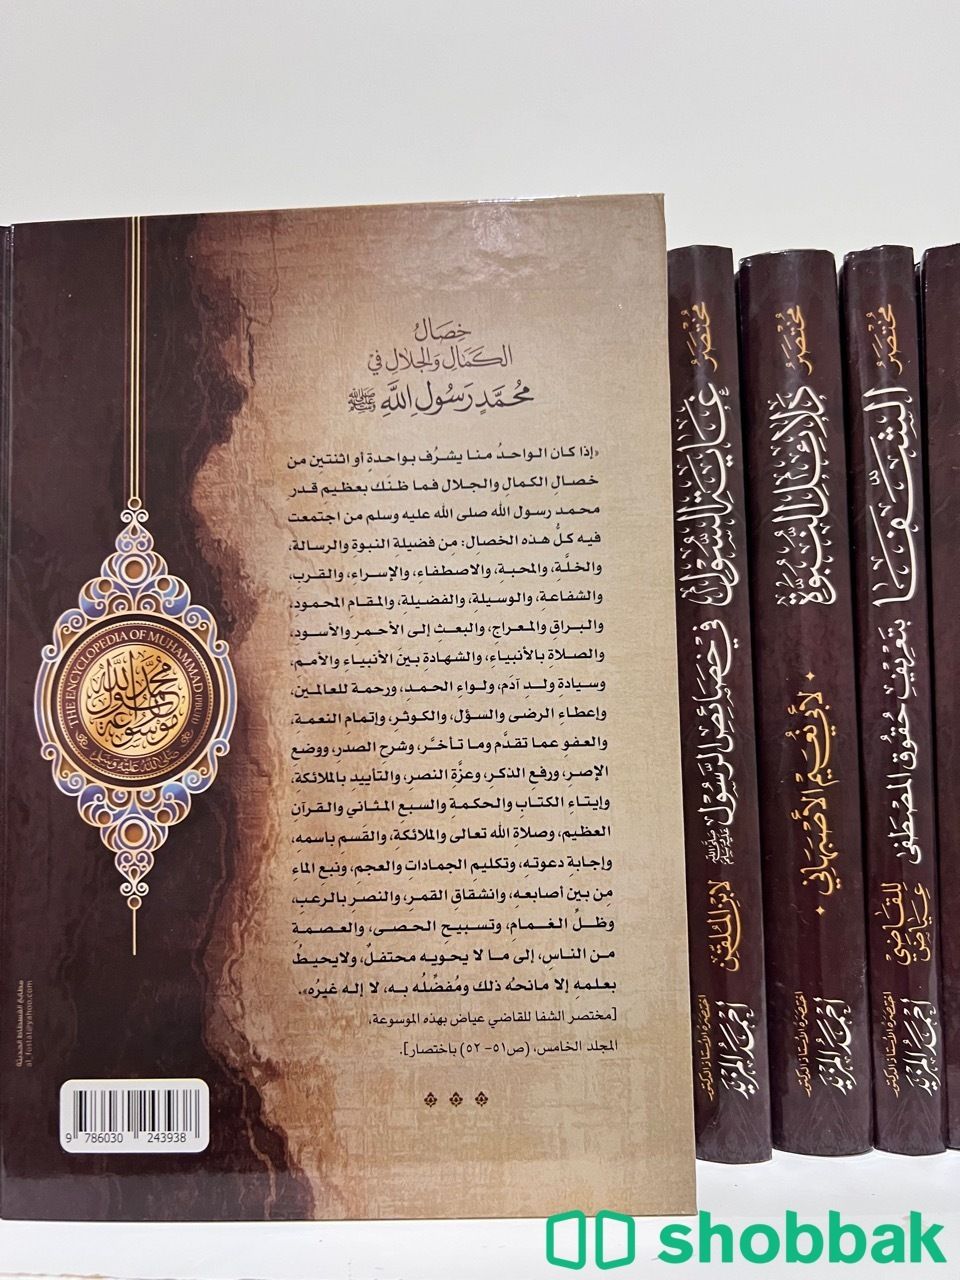 6 مجلدات للدكتور أحمد المزيد 📚مجموعة كتب مختصر السيرة النبوية شباك السعودية